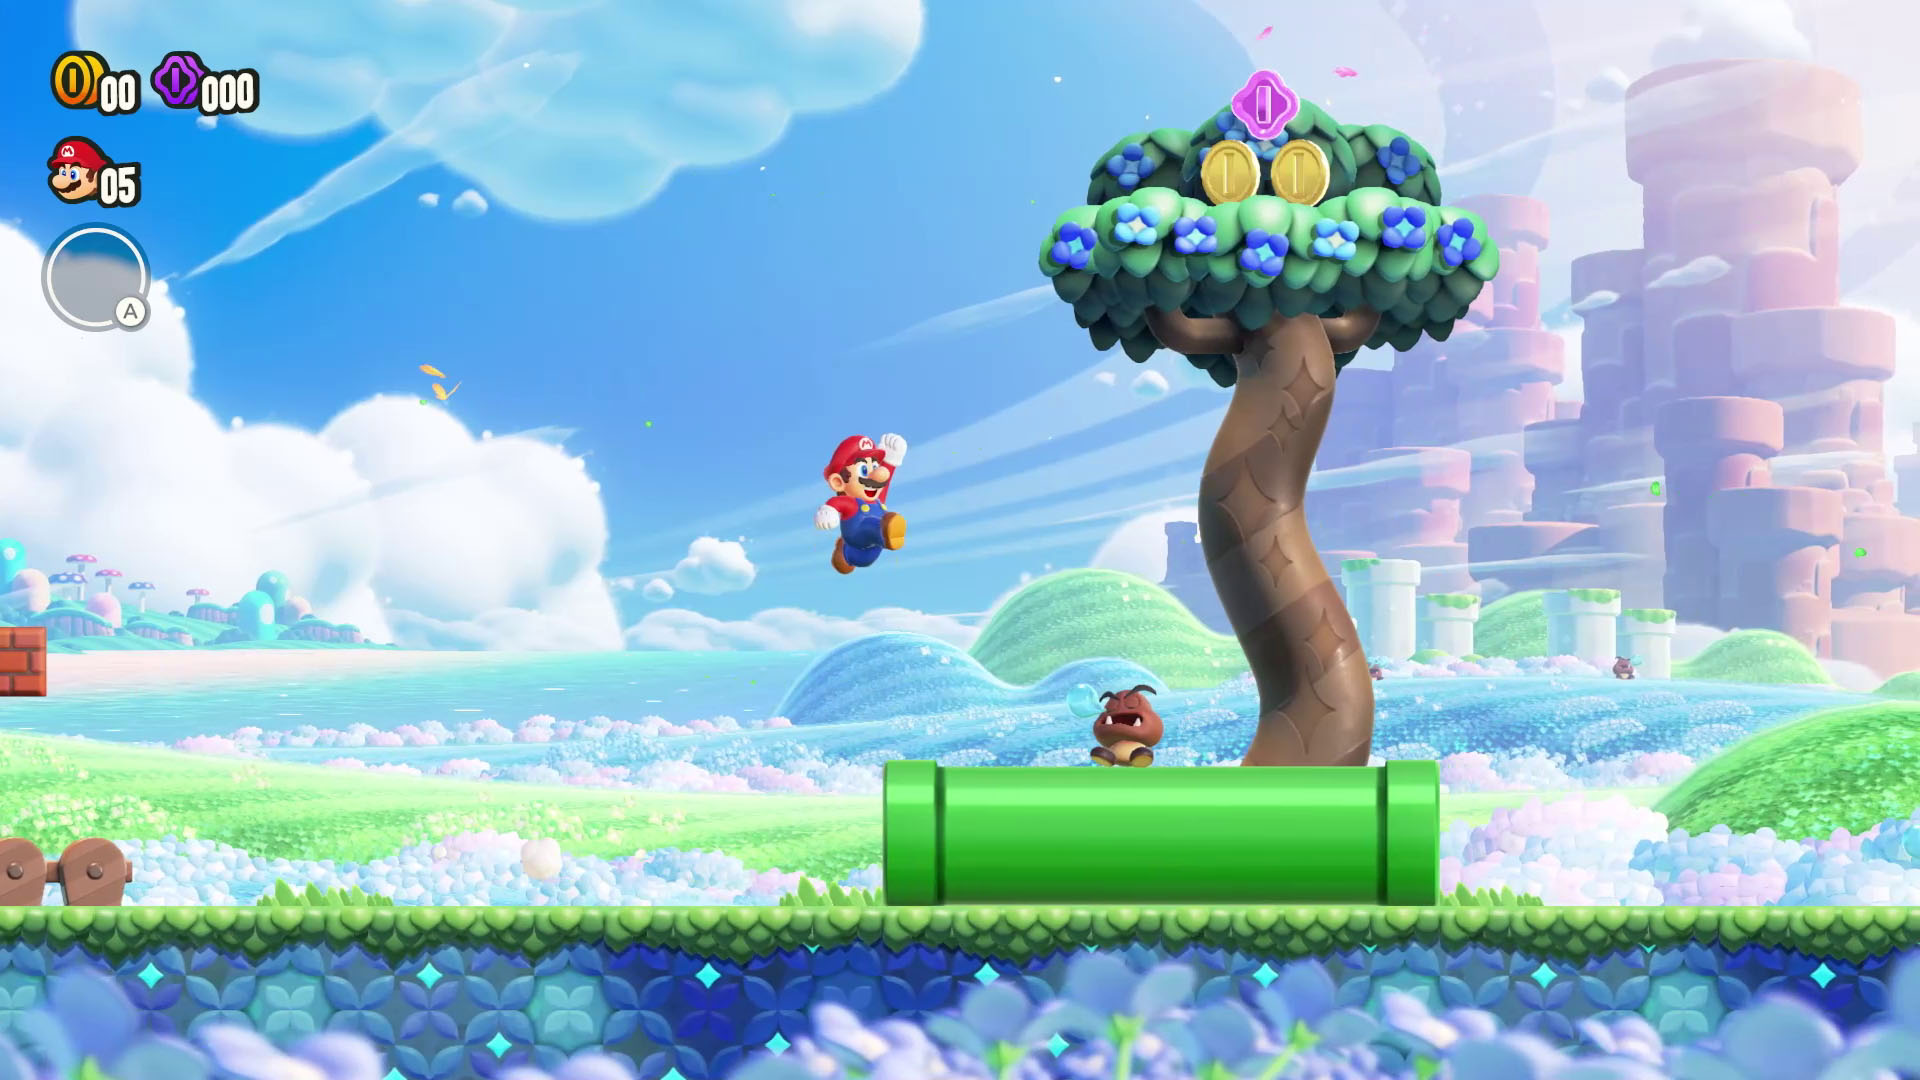 Super Mario Bros Wonder  Nintendo anuncia novo game 2D do Mario